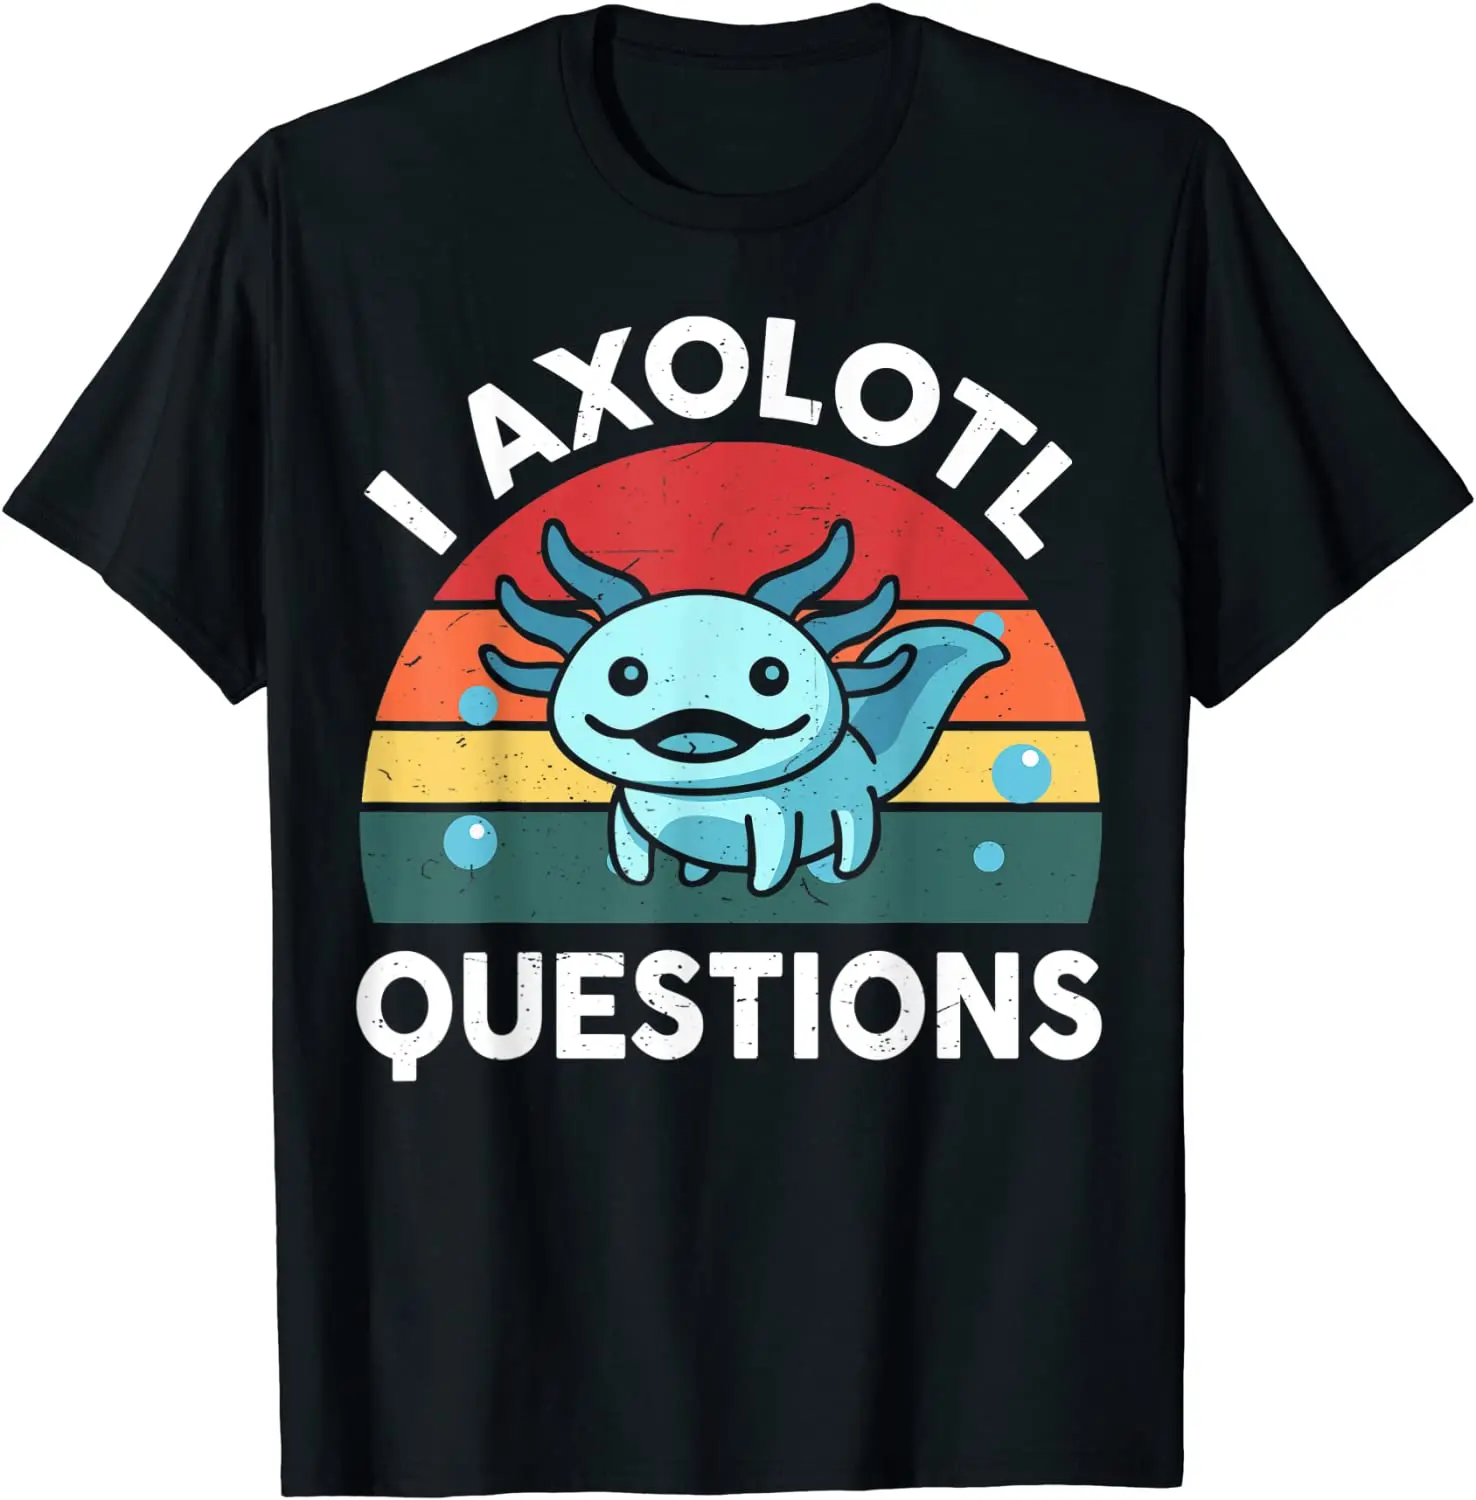 

I Axolotl вопросы рубашка детская забавная Милая Axolotl футболка